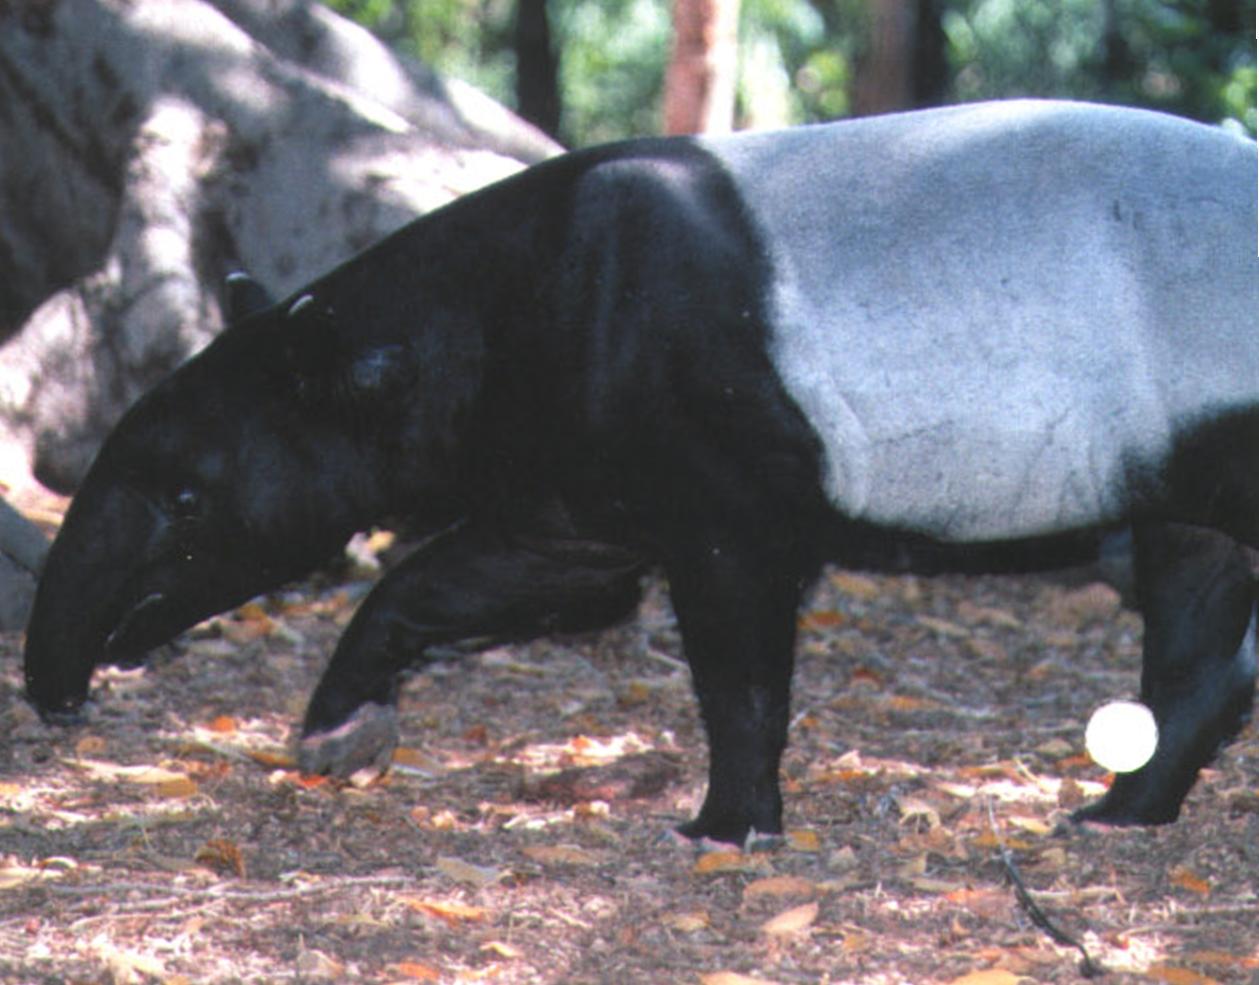 В процессе поиска пищи тапир непрерывно ощупывает землю коротким хоботом, безошибочно определяя запах других тапиров и хищников.